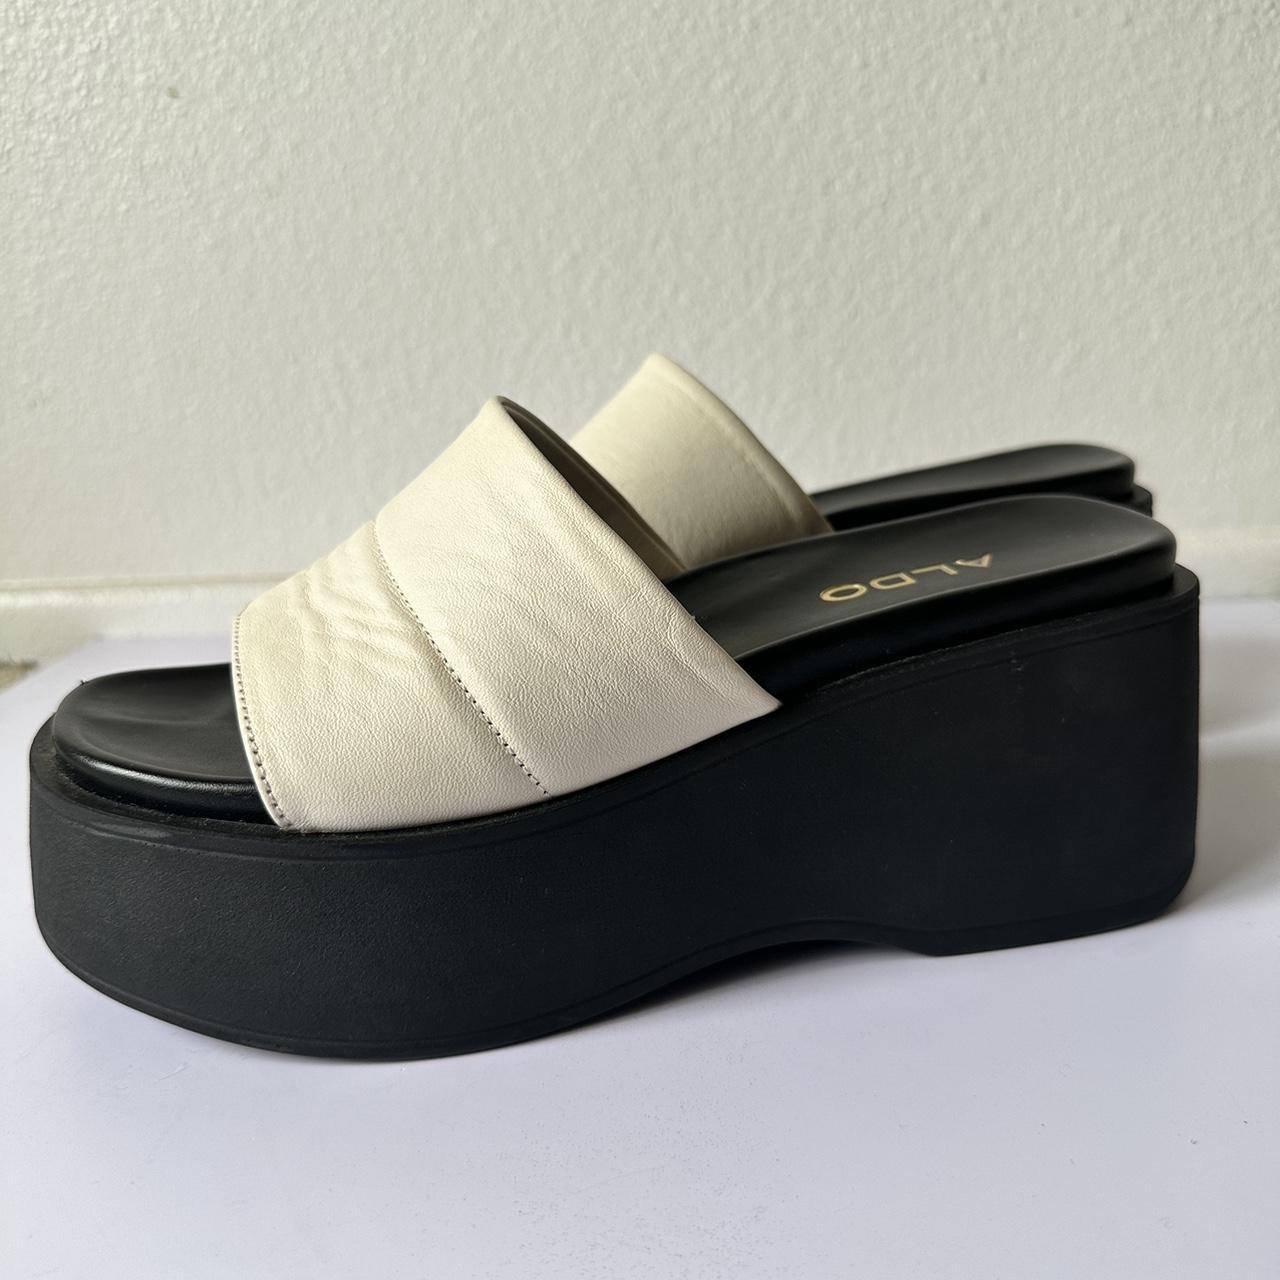 ALDO Women's Black and Cream Sandals